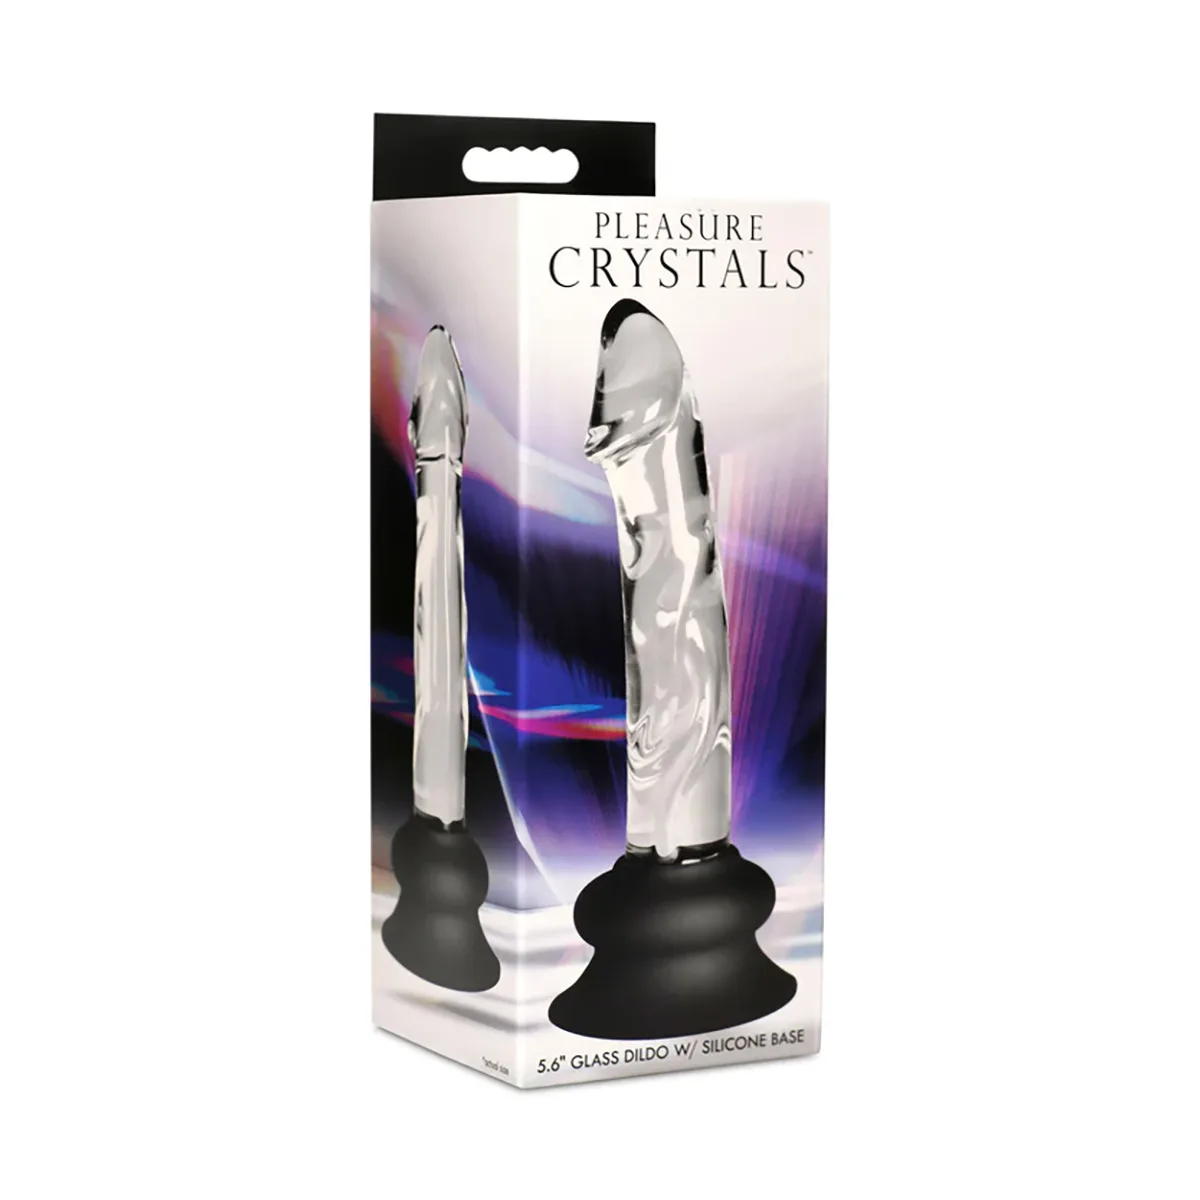 Pleasure-Crystals-5.6-Glass-Dildo-Silicone-Base-OPR-1070067-1